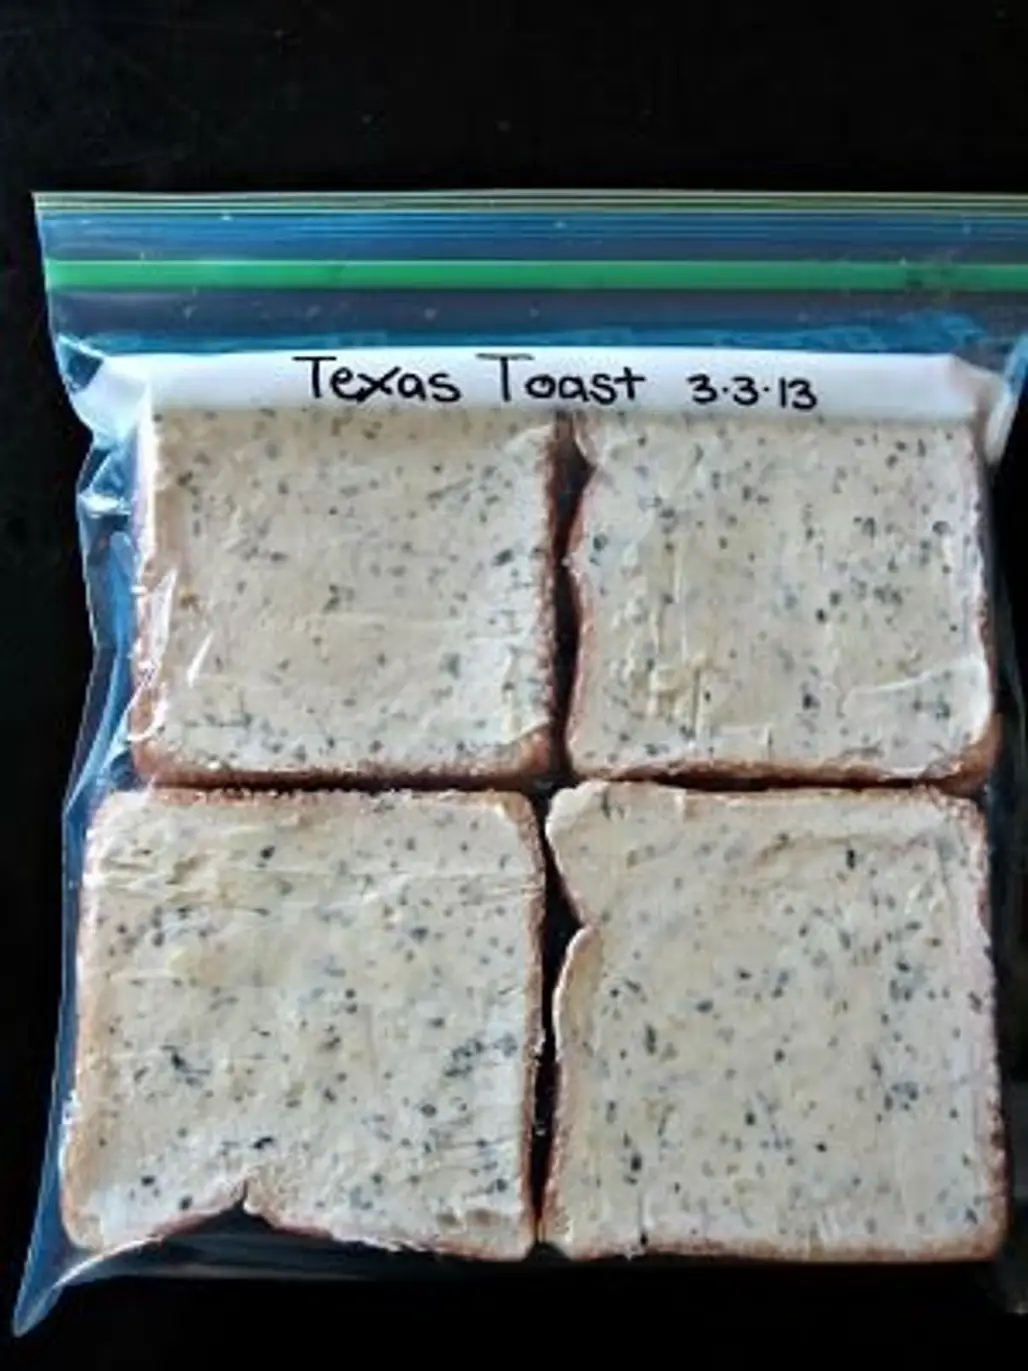 Garlic Texas Toast